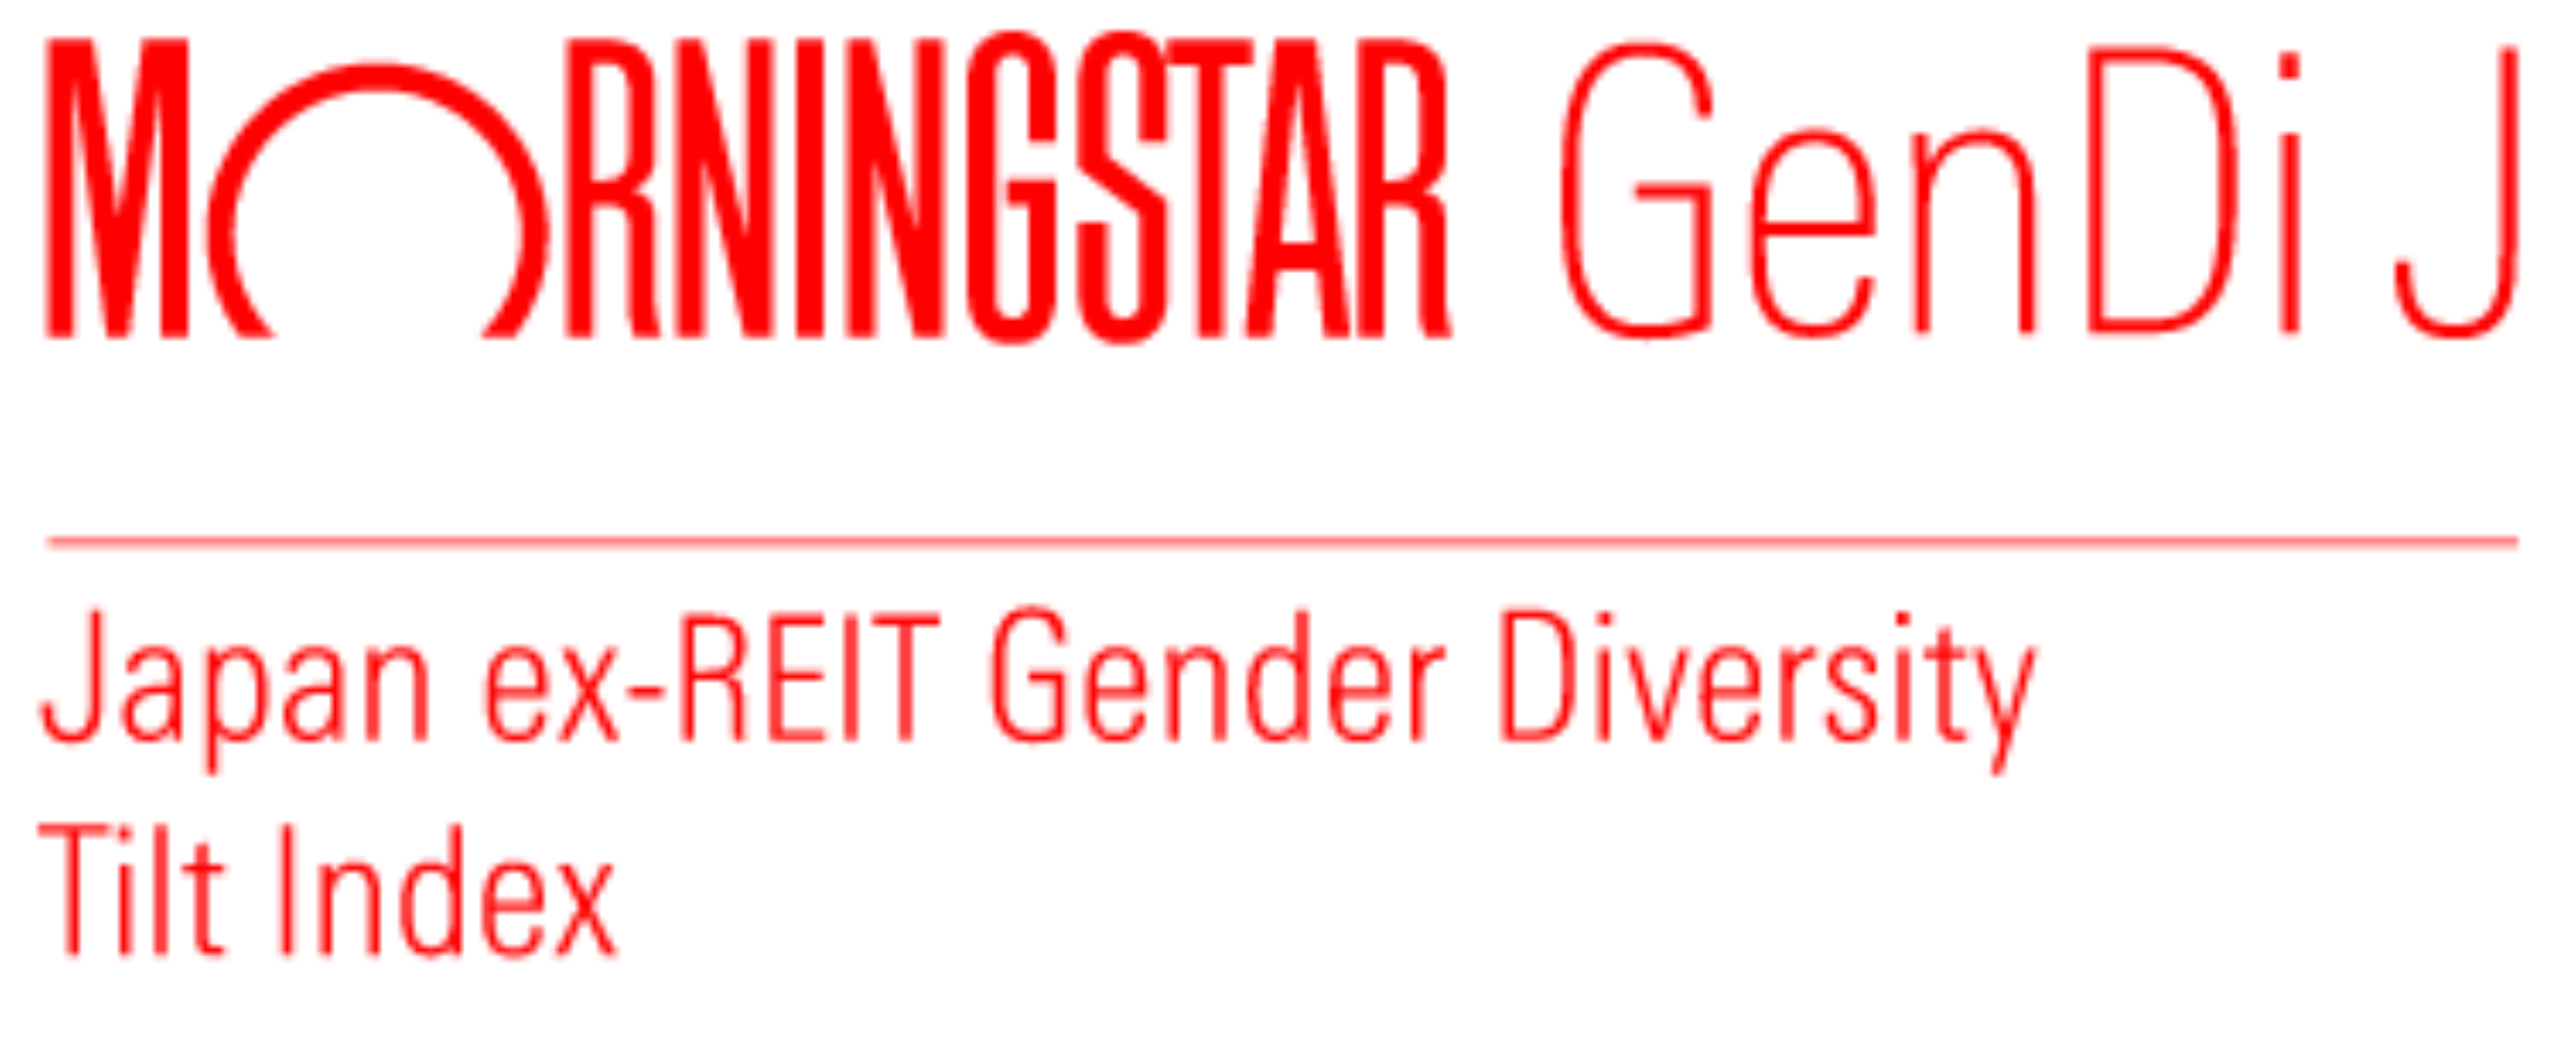 Morningstar Japan ex-REIT Gender Diversity Tilt Index (GenDi J)